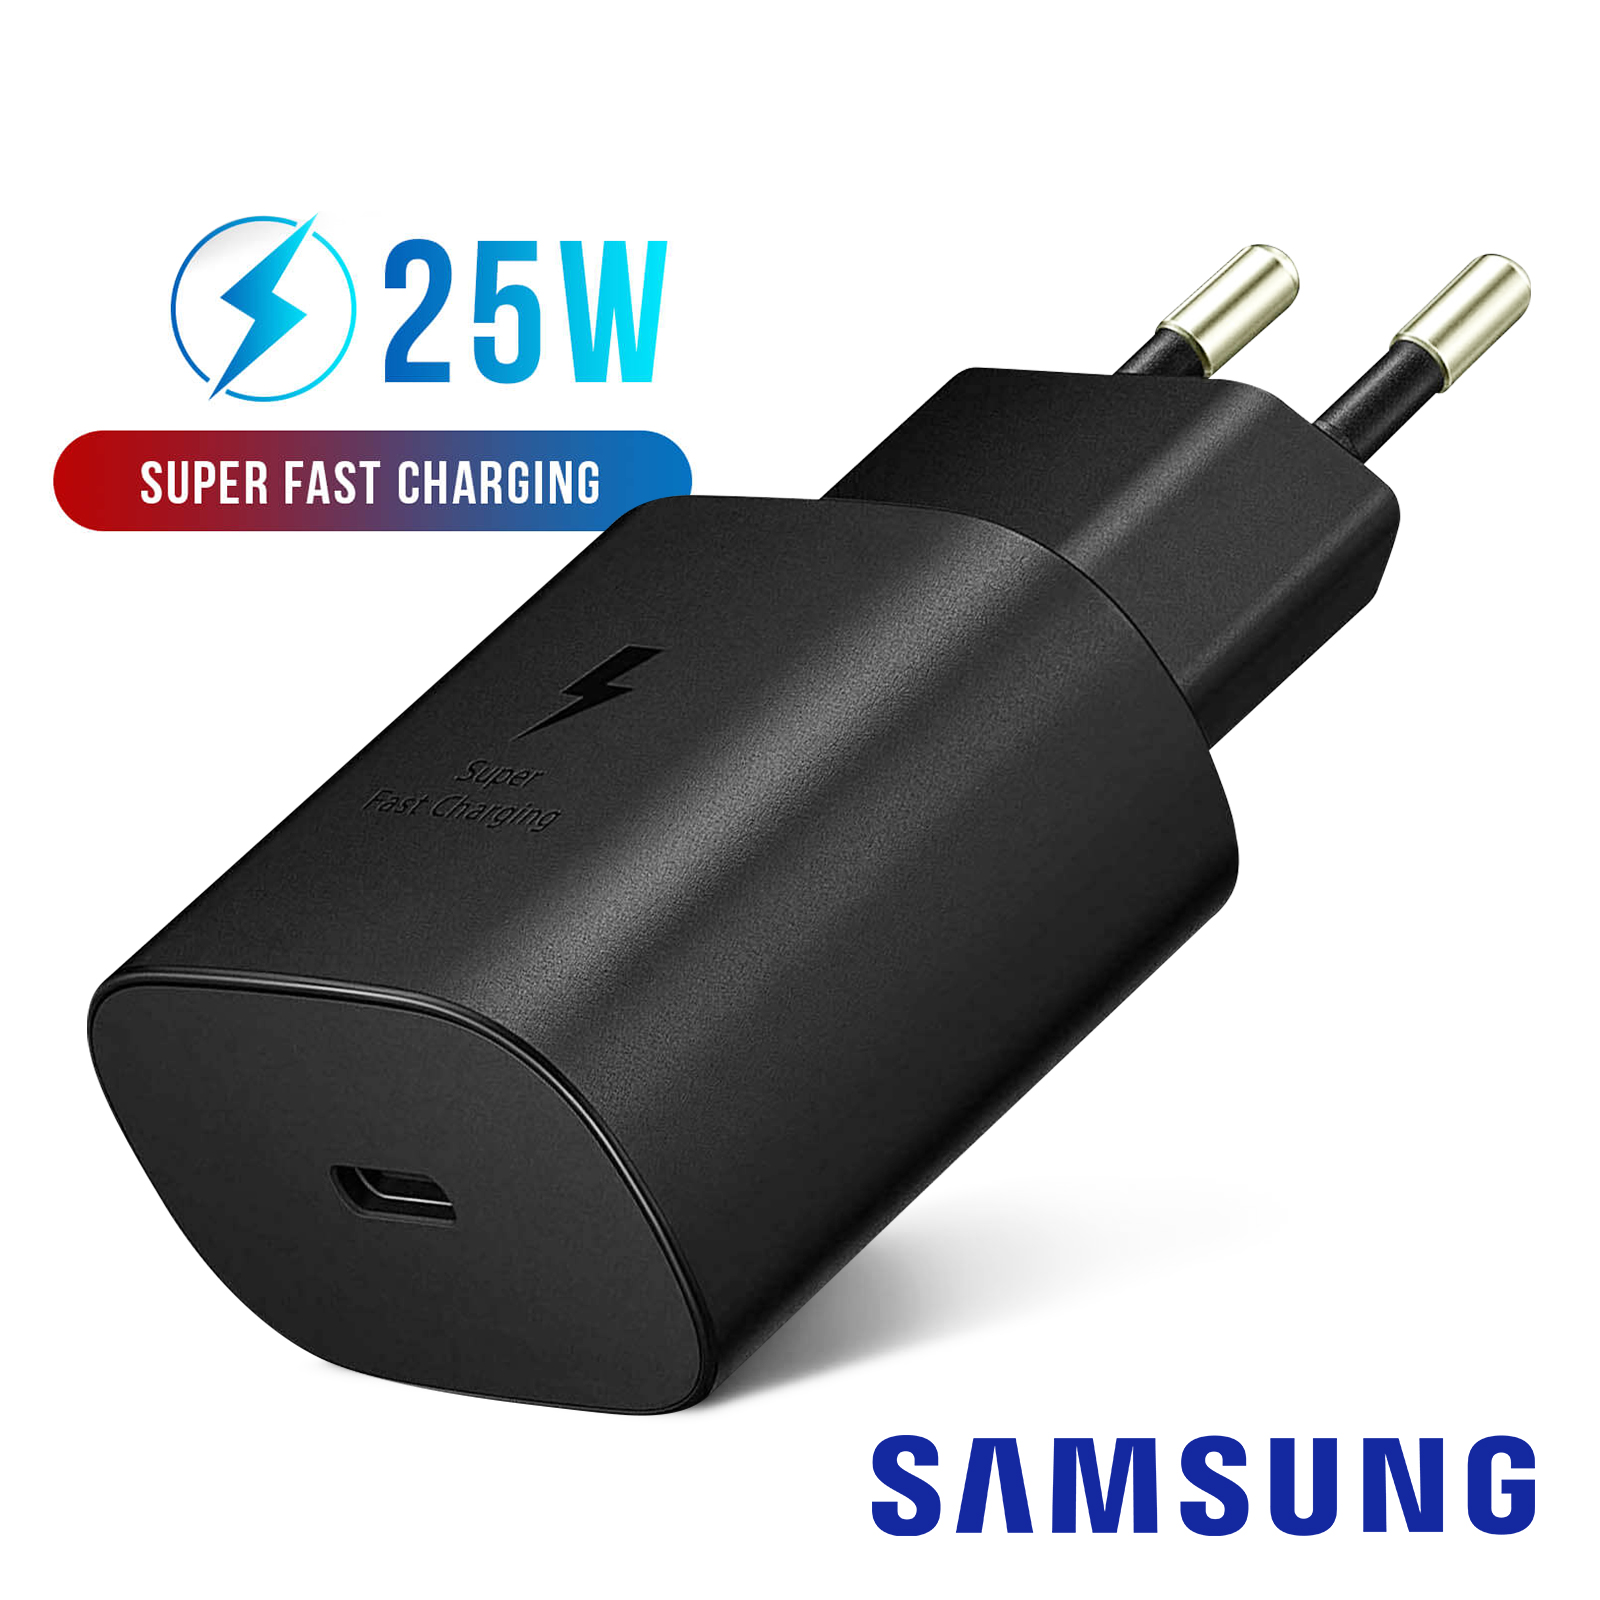 Samsung : CHARGEUR SECTEUR RAPIDE 25W USB TYPE C avec cable